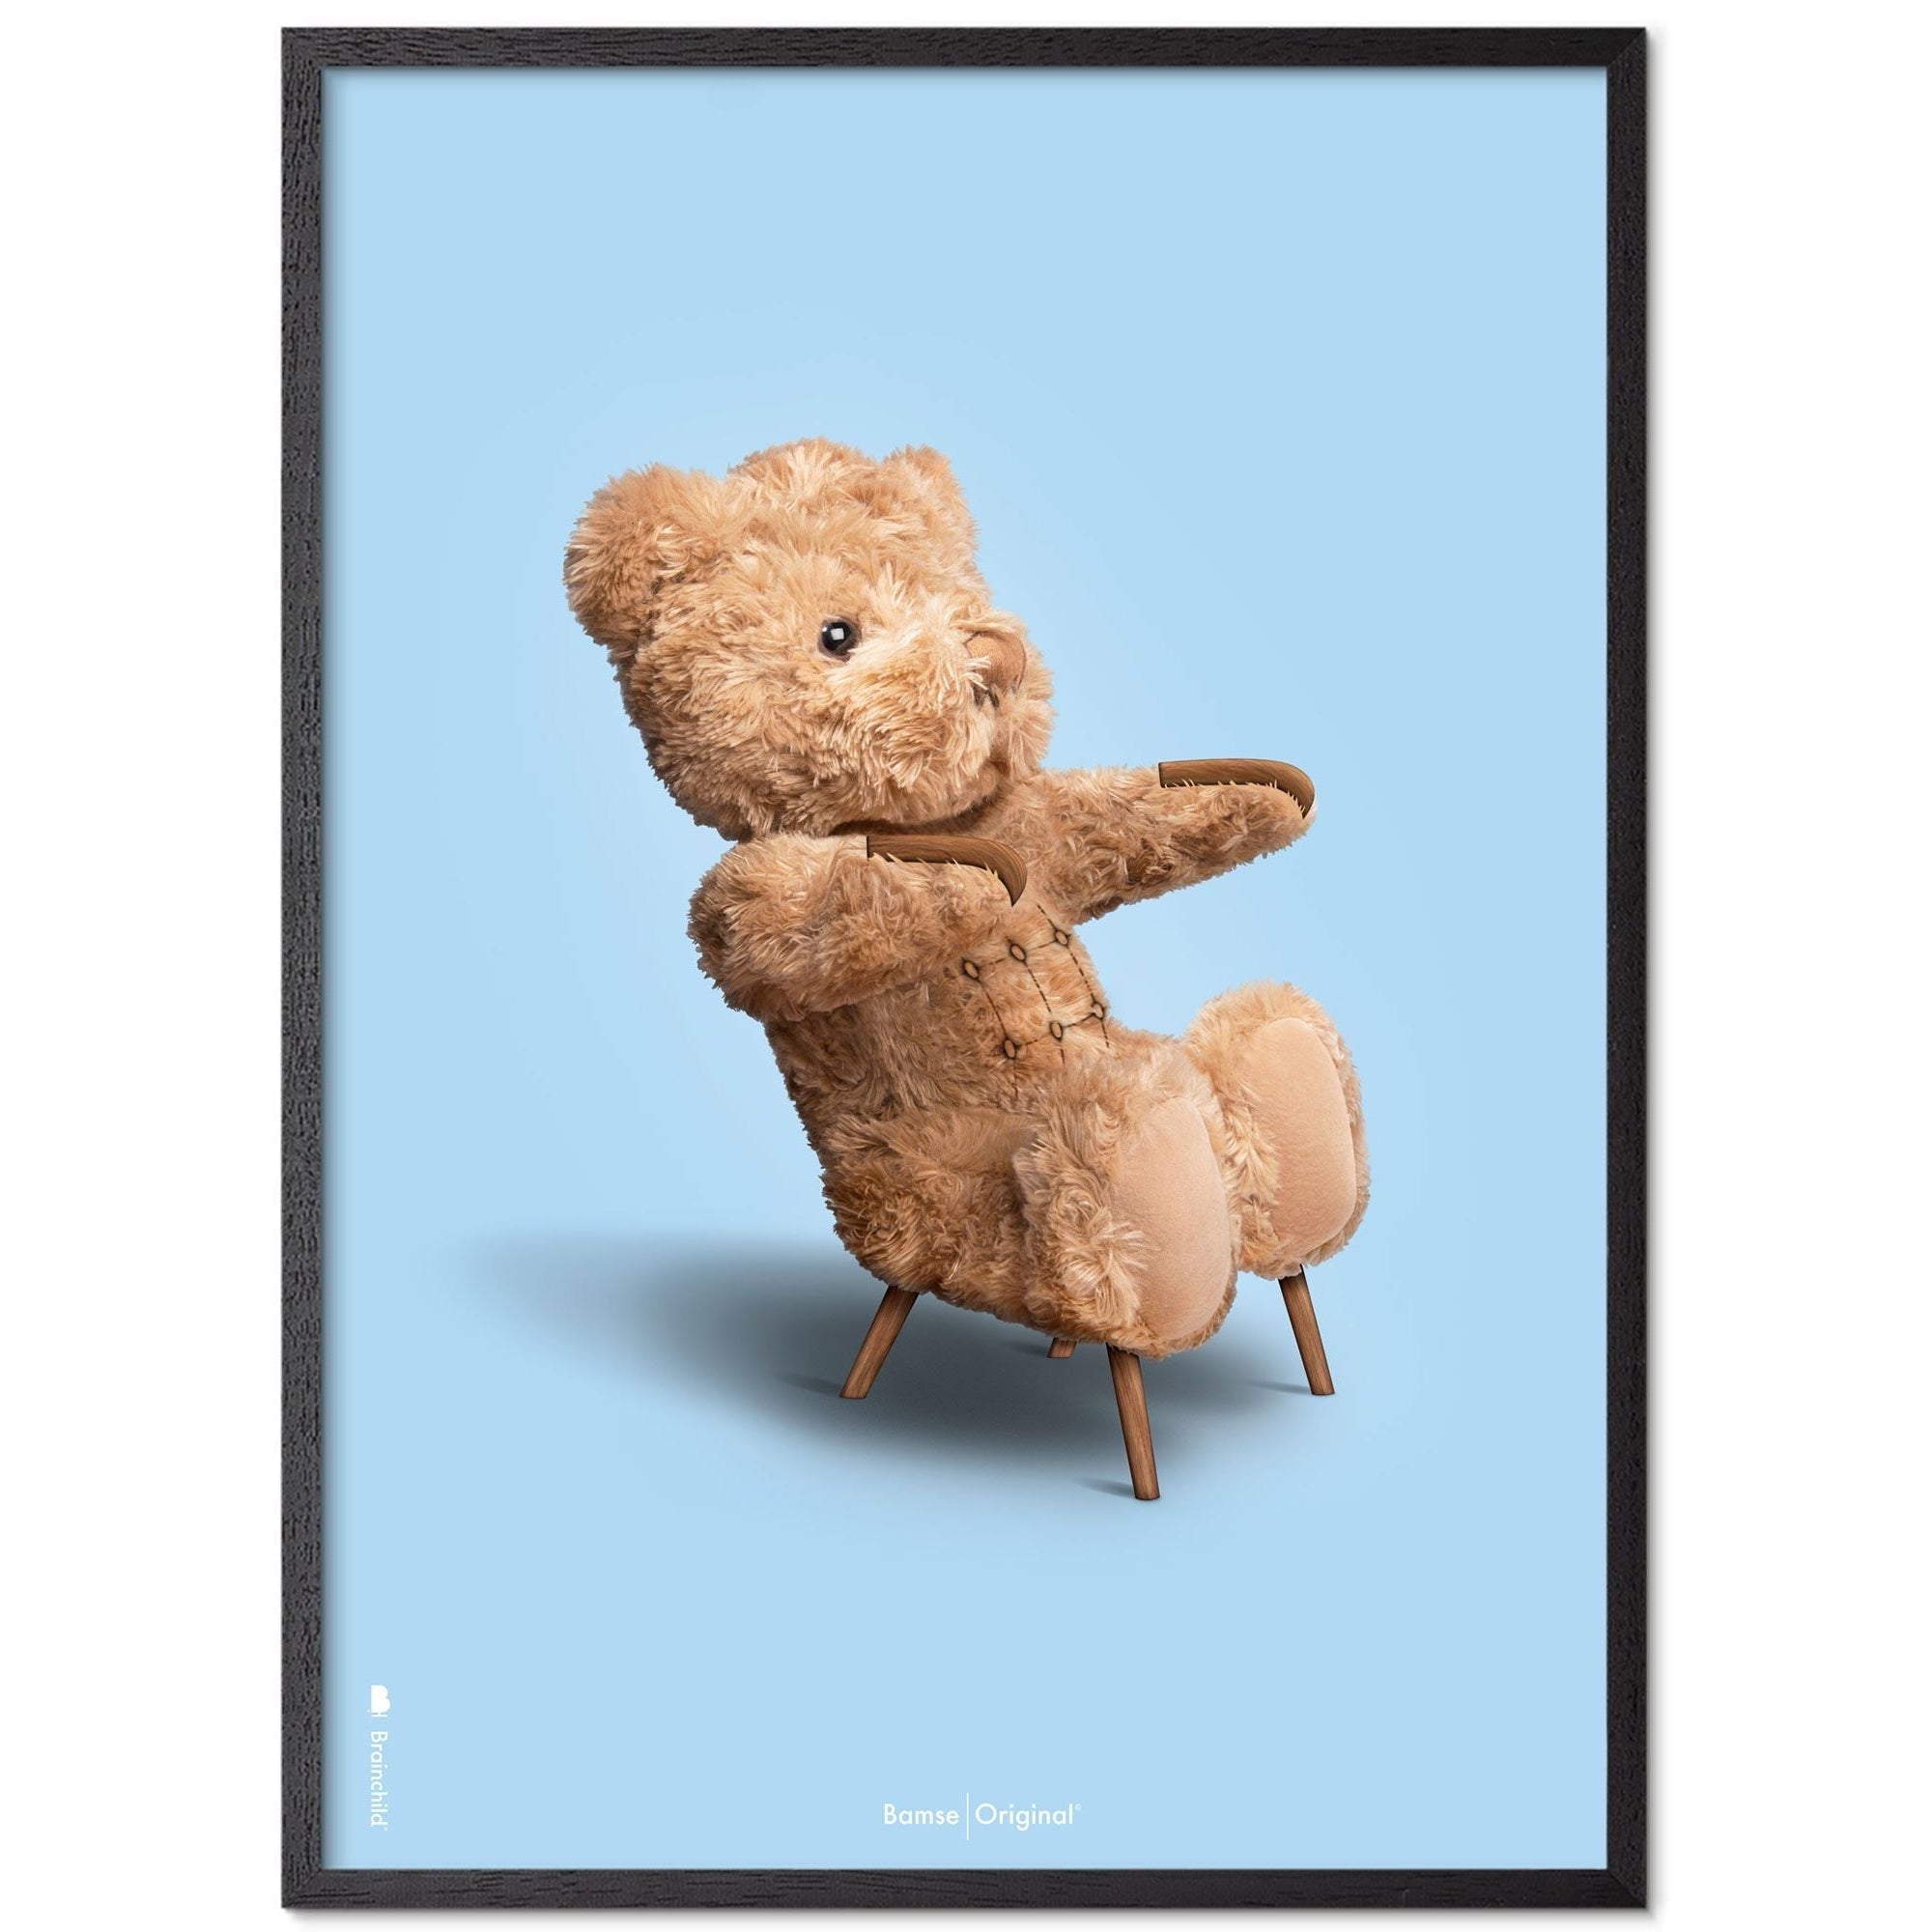 Brainchild Teddybär Klassischer Posterrahmen aus schwarz lackiertem Holz 70x100 Cm, hellblauer Hintergrund